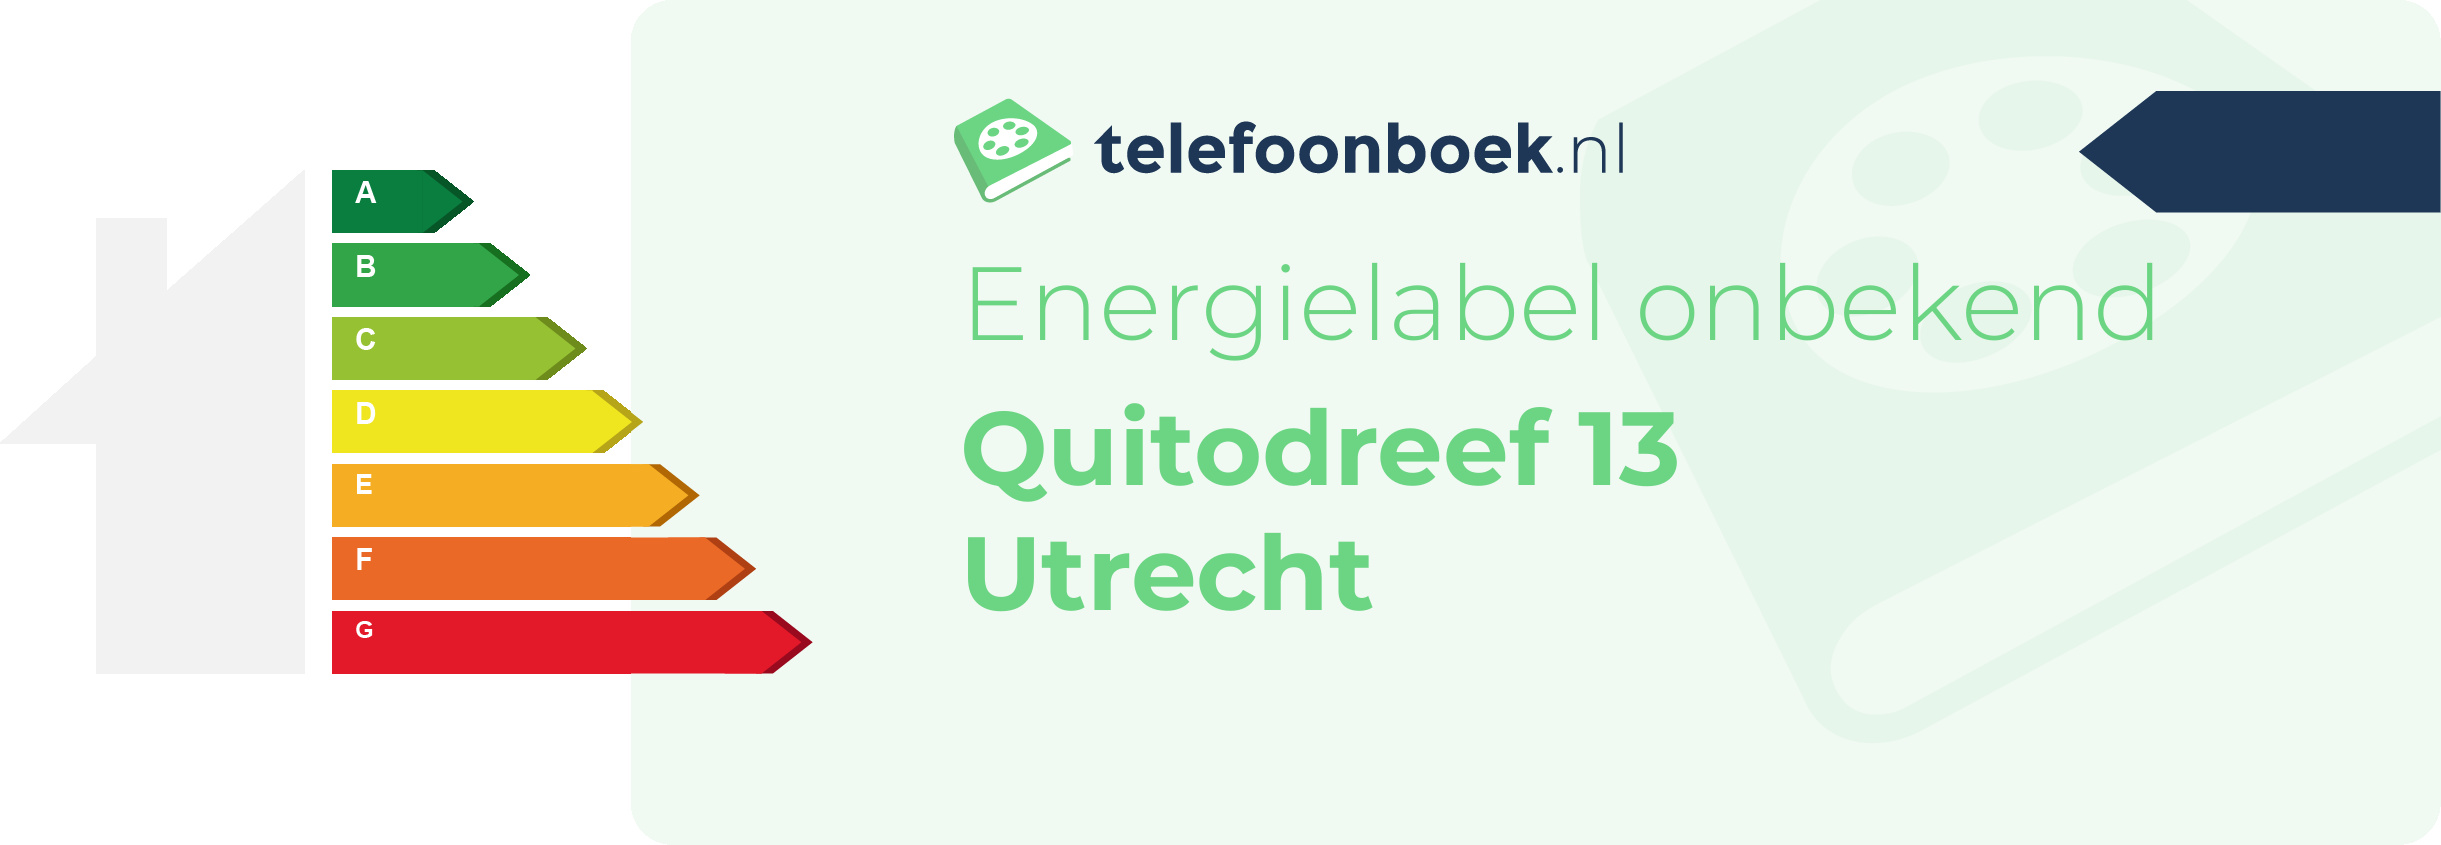 Energielabel Quitodreef 13 Utrecht